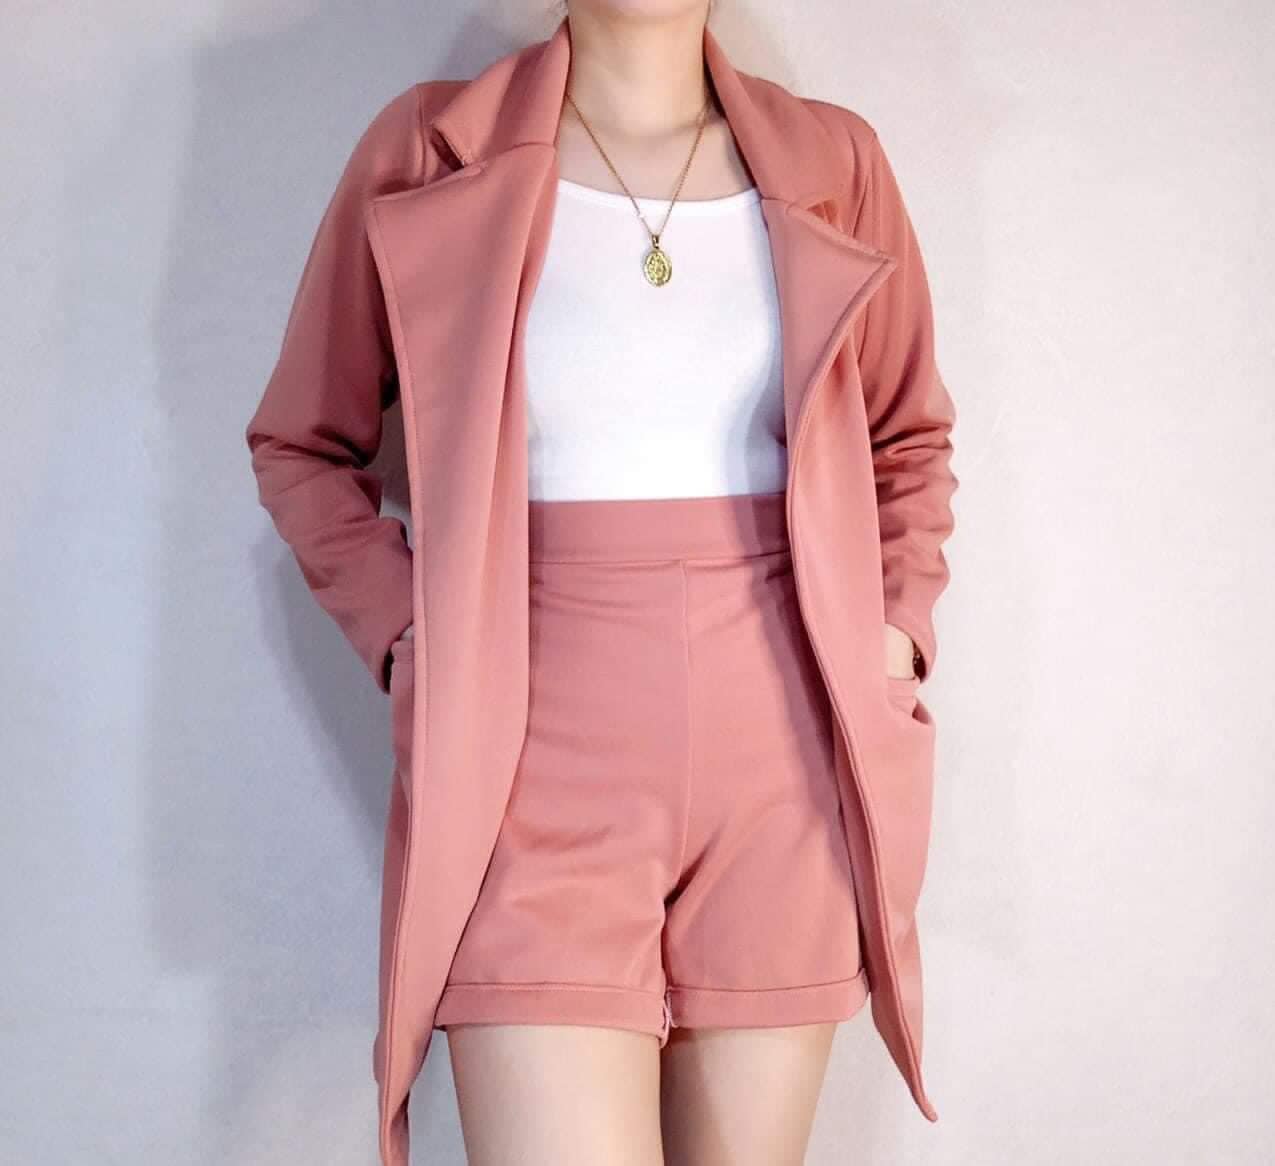 Buy Pink Suit For Women online